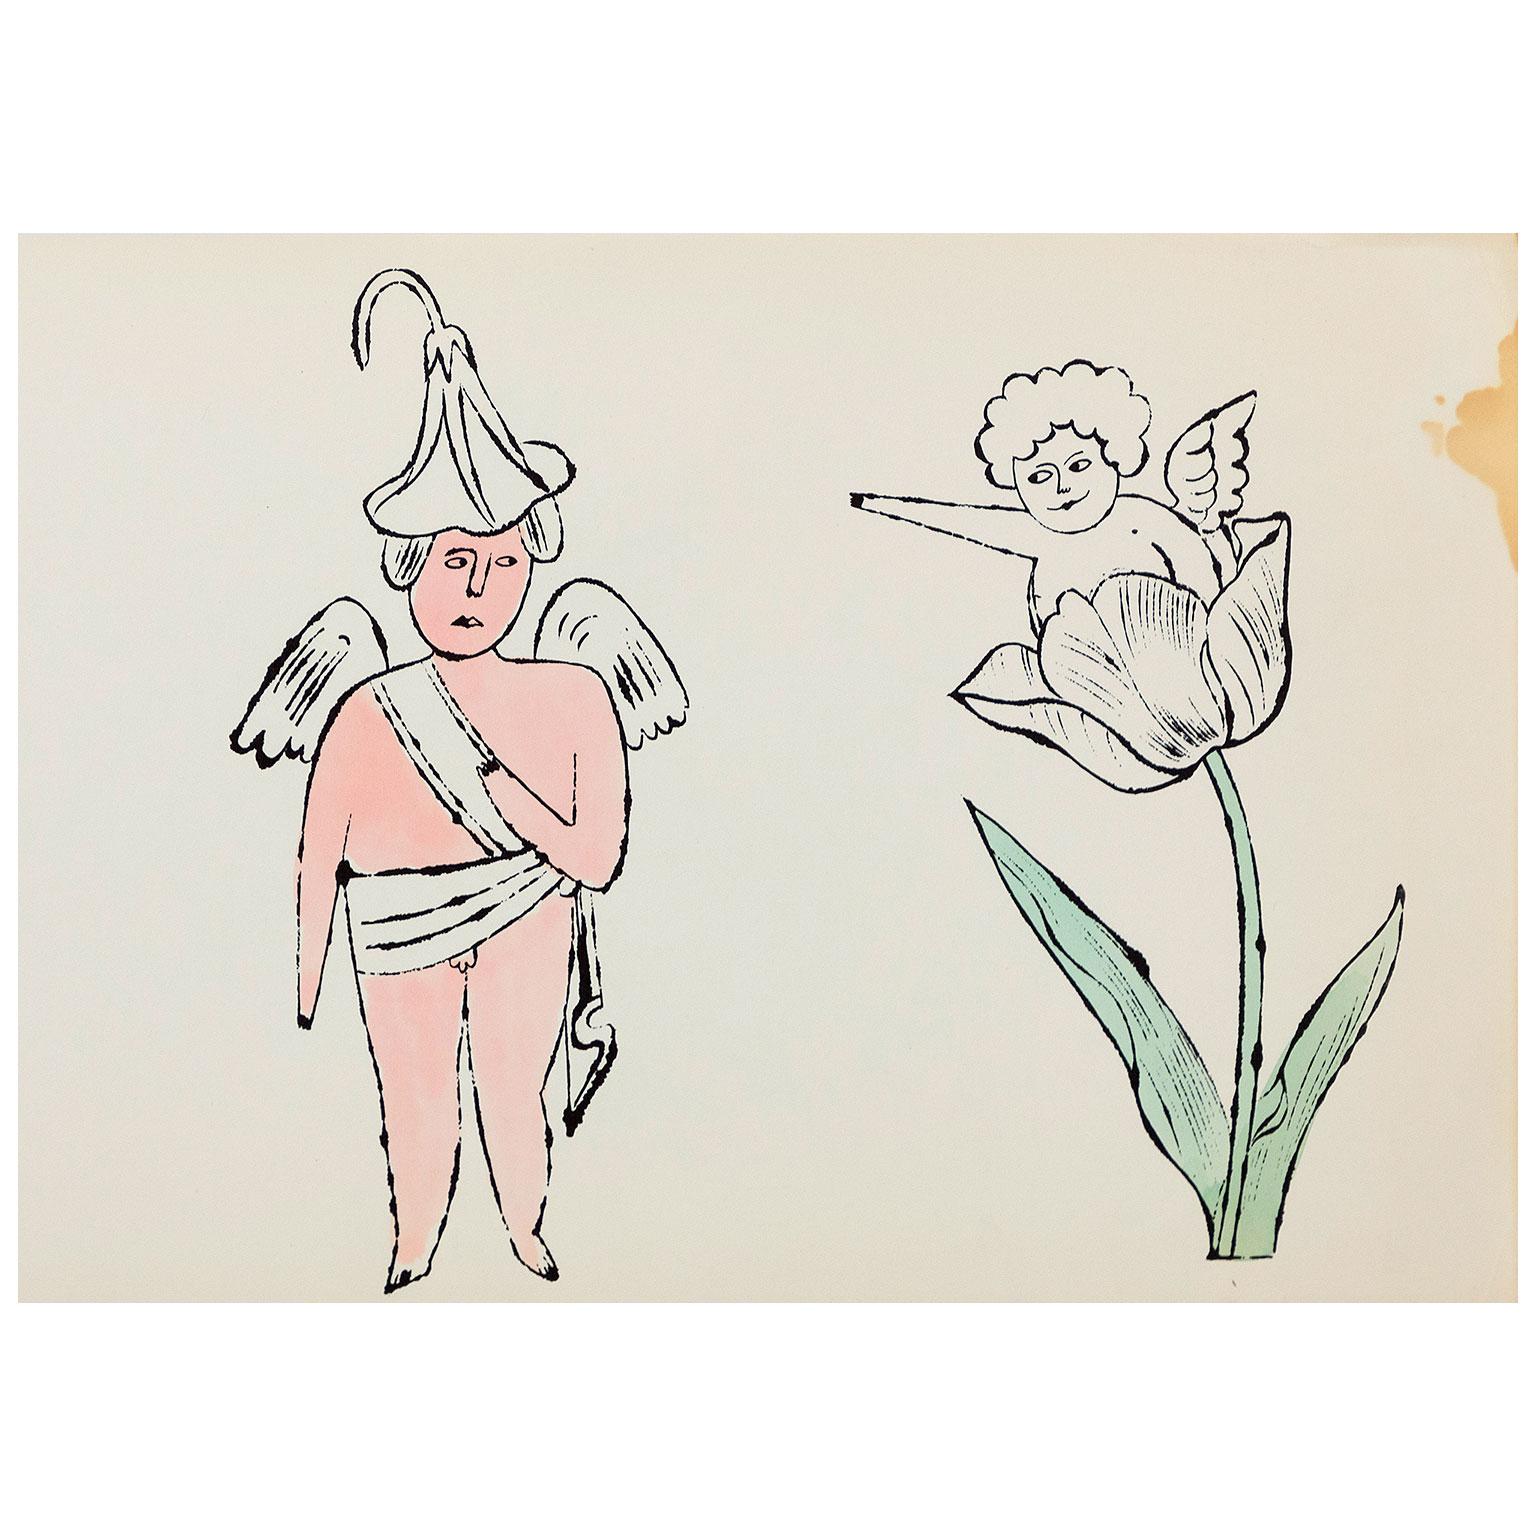 Andy Warhol ist der wohl bedeutendste amerikanische Künstler des 20. Jahrhunderts. In den 1950er Jahren war er ein gefragter und gefeierter Illustrator, der für die renommiertesten New Yorker Publikationen (wie Harper's Bazaar) und elegante